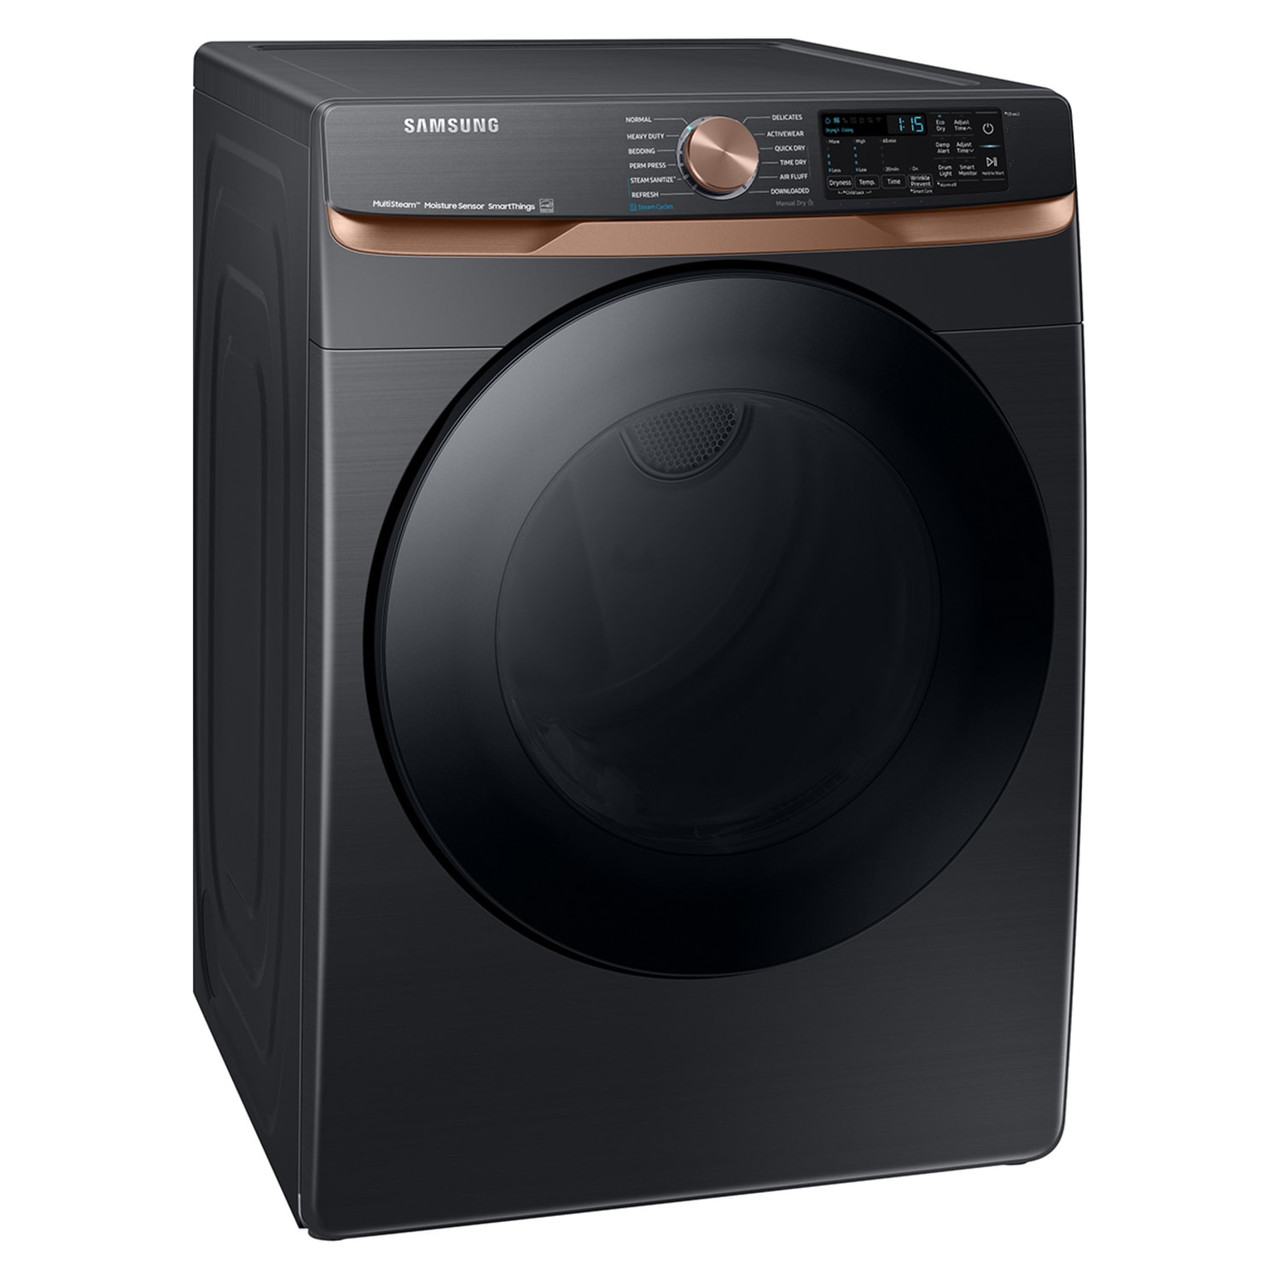 Samsung 7.5 cu. ft. Smart Gas Dryer in Brushed Black with Steam Sanitize+ and Sensor Dry - DVG50BG8300V